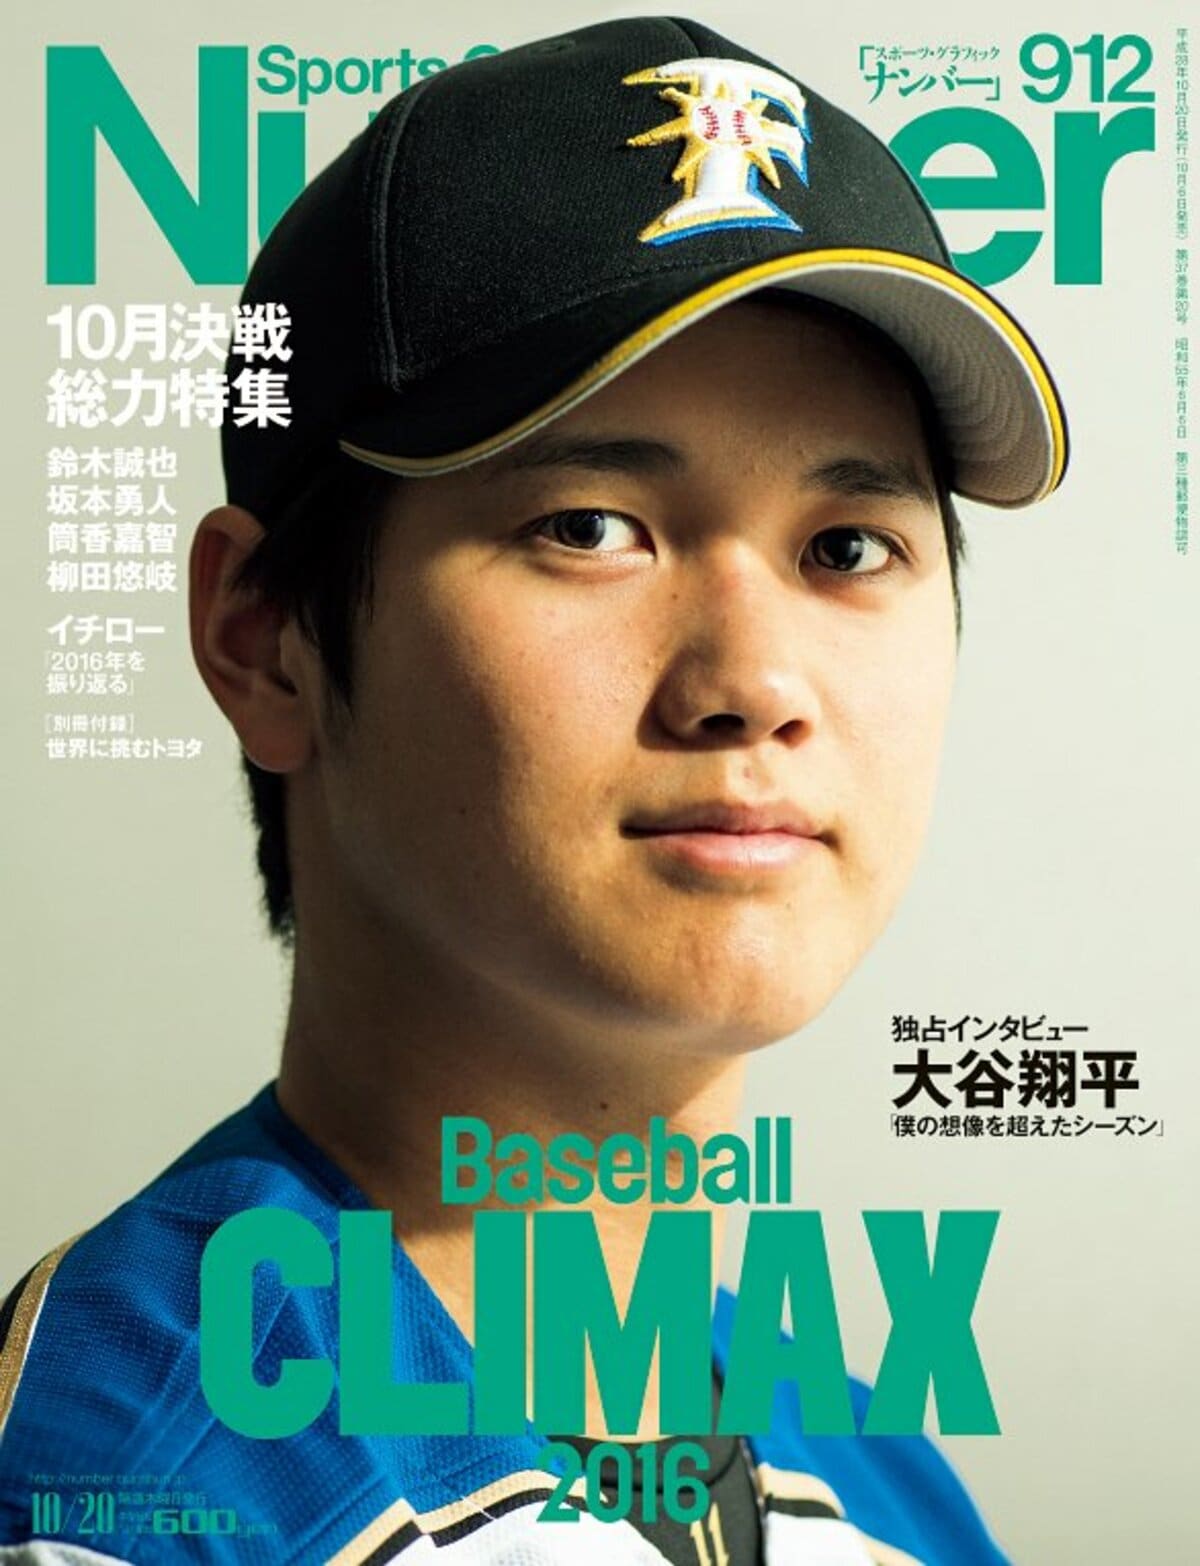 ナンバー　Number　Web　2016　CLIMAX　Baseball　Number912号